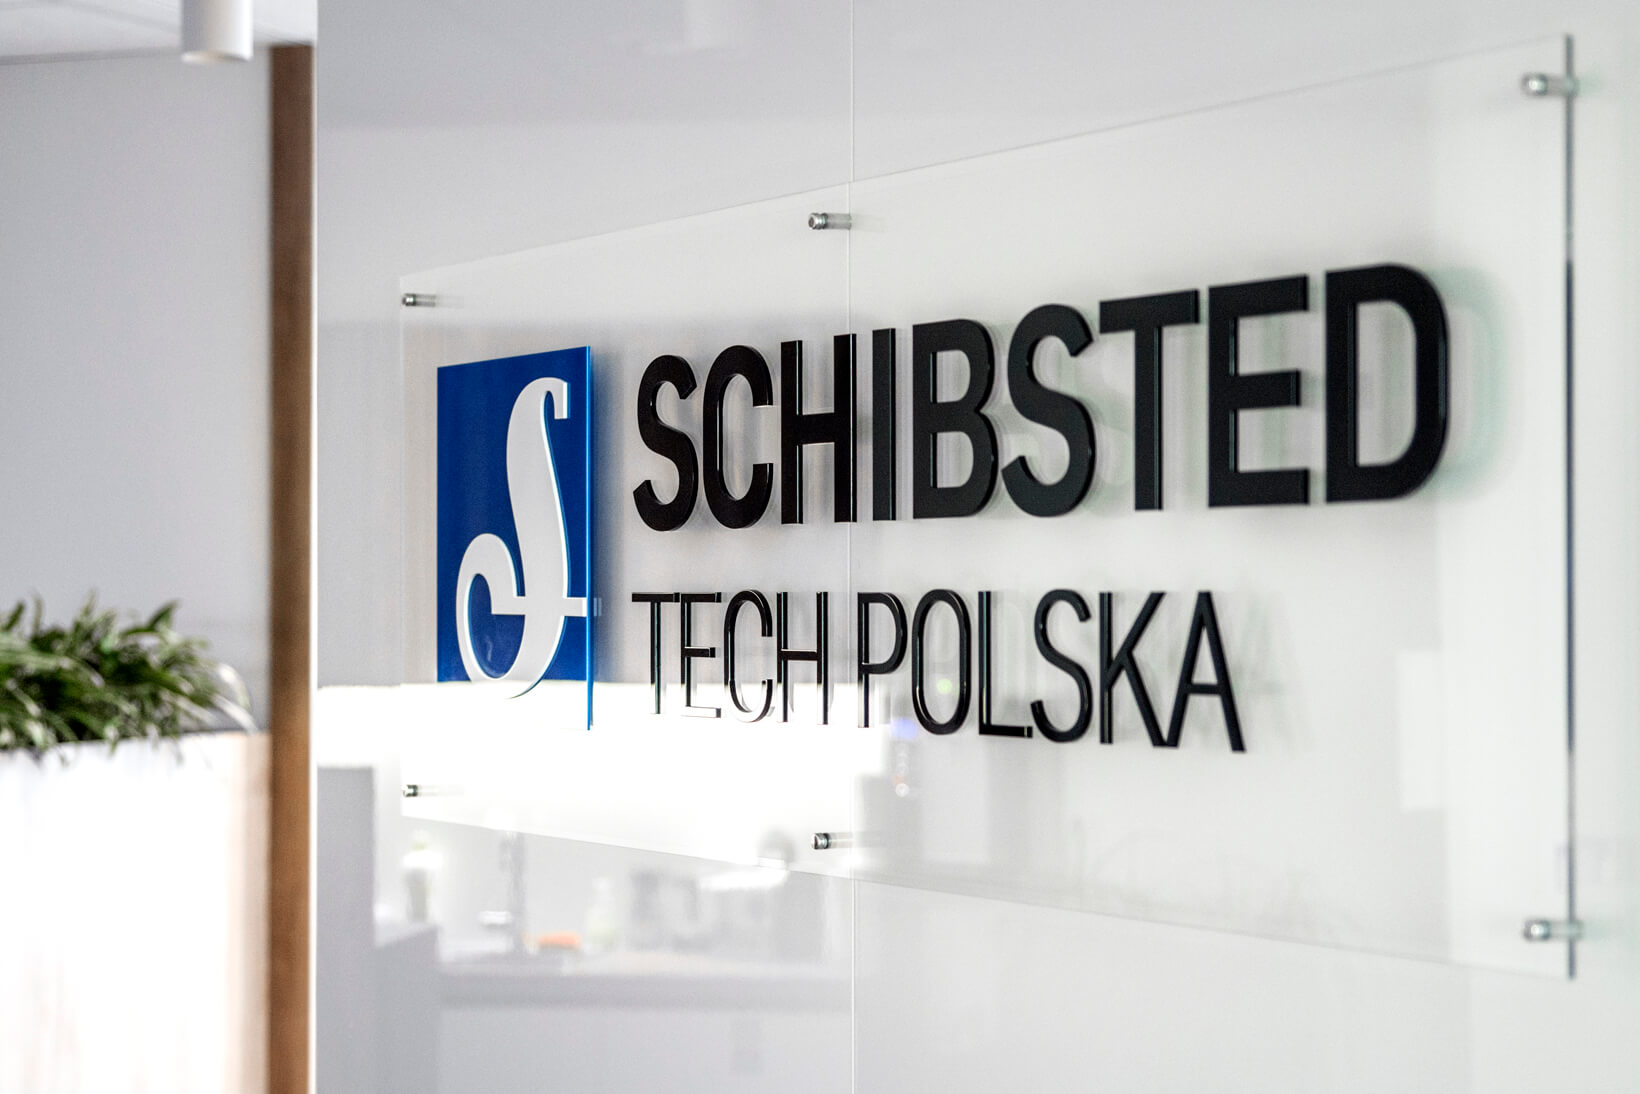 Schibsted Tech Polonia - Schibsted Tech Polonia - logotipo y letras en 3D sobre la base de plexiglás en los separadores de la zona de recepción